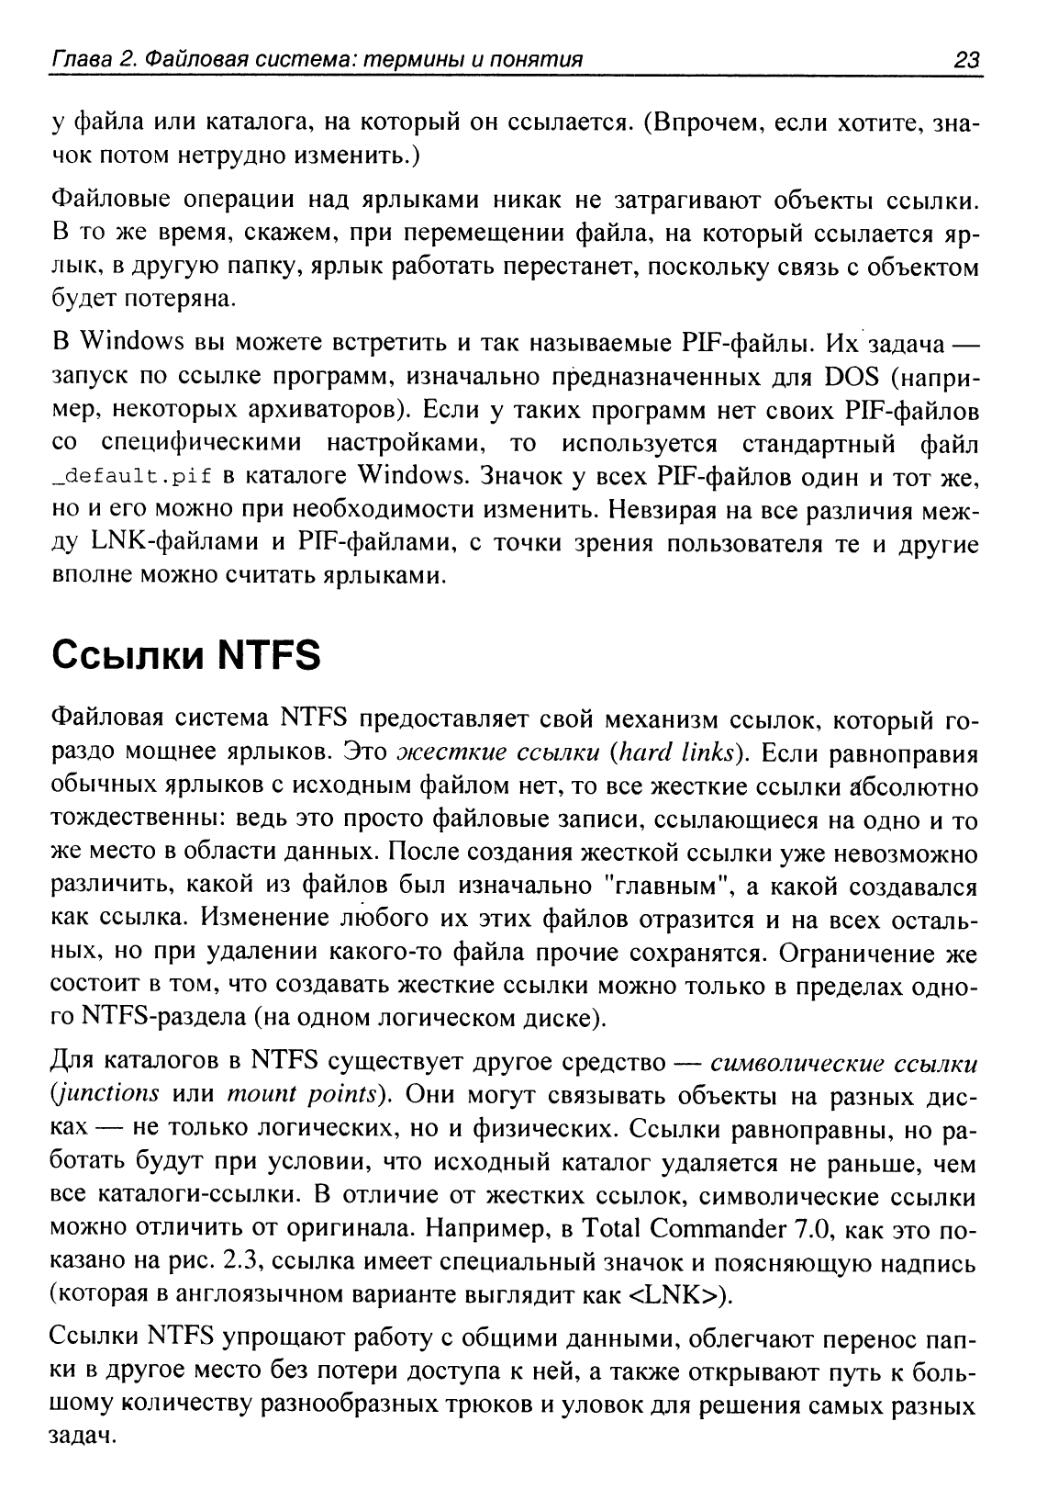 Ссылки NTFS